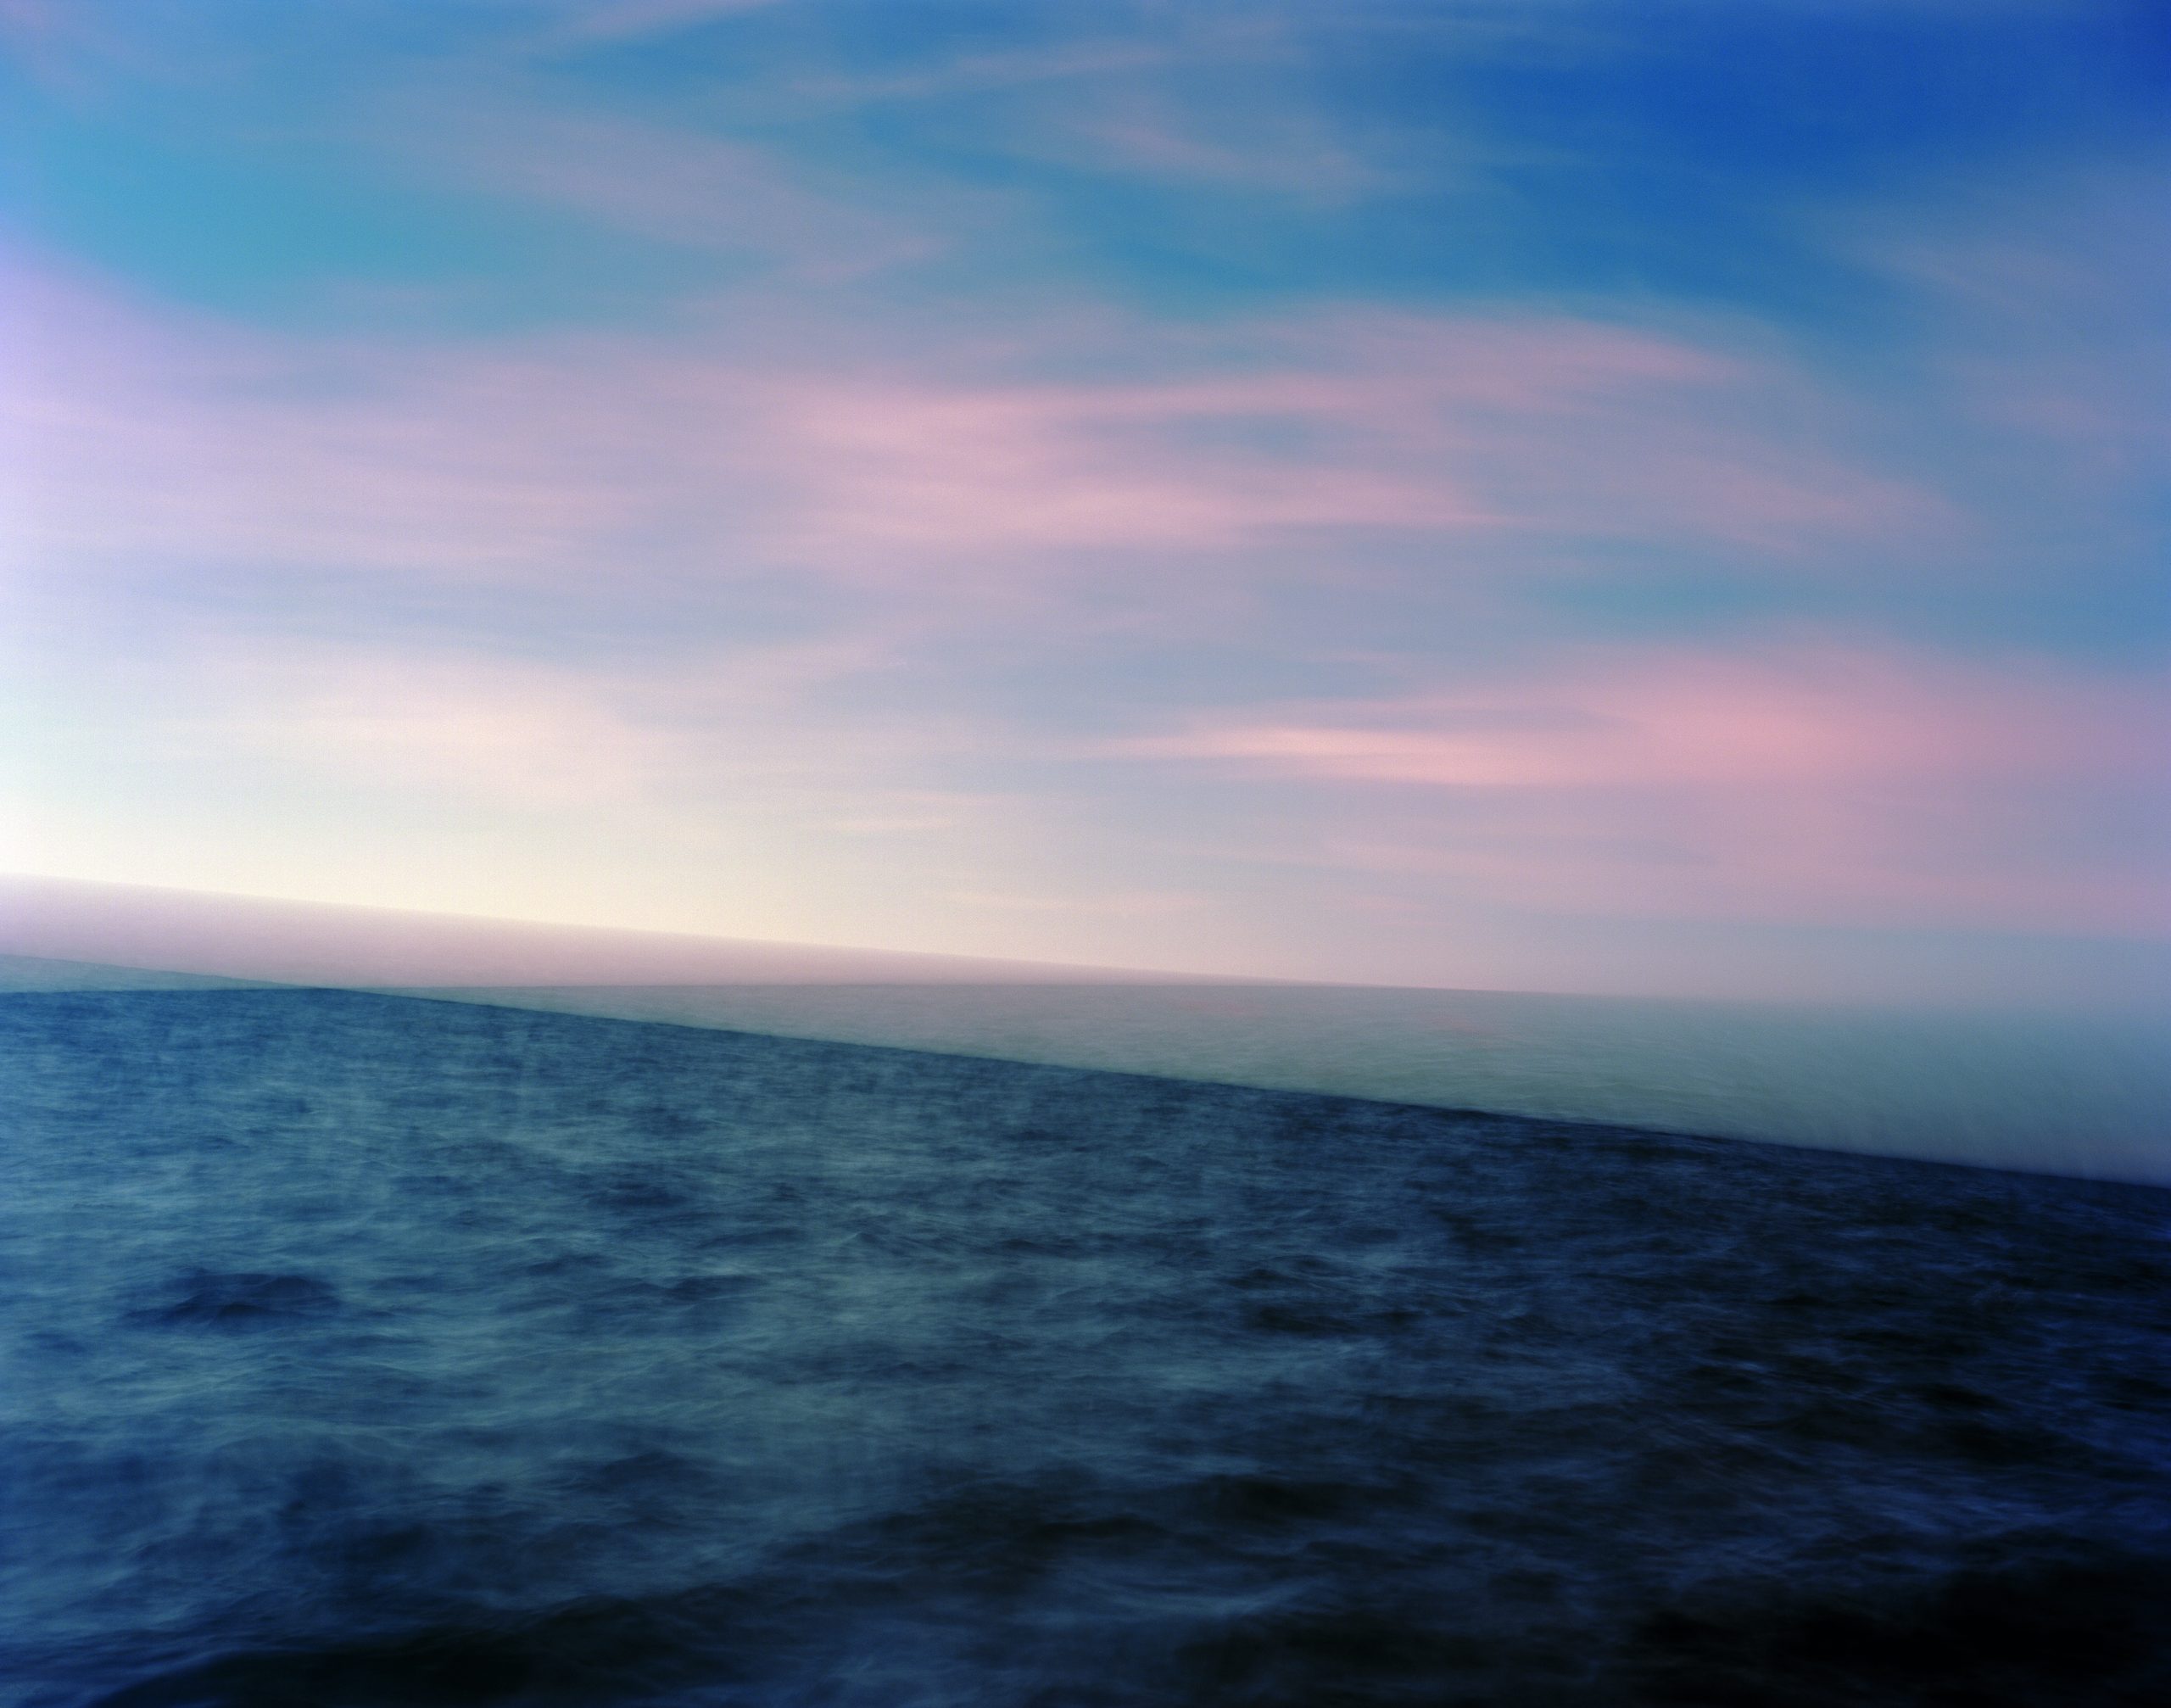 Orizzonte triplo esposto dalla barca alla deriva. Alba, mezzogiorno solare e tramonto. Stampa c-print analogica. Ingrandimento da negativo 4x5". Dimensioni di stampa fino a 150 cm x 120 cm. @Ole Brodersen